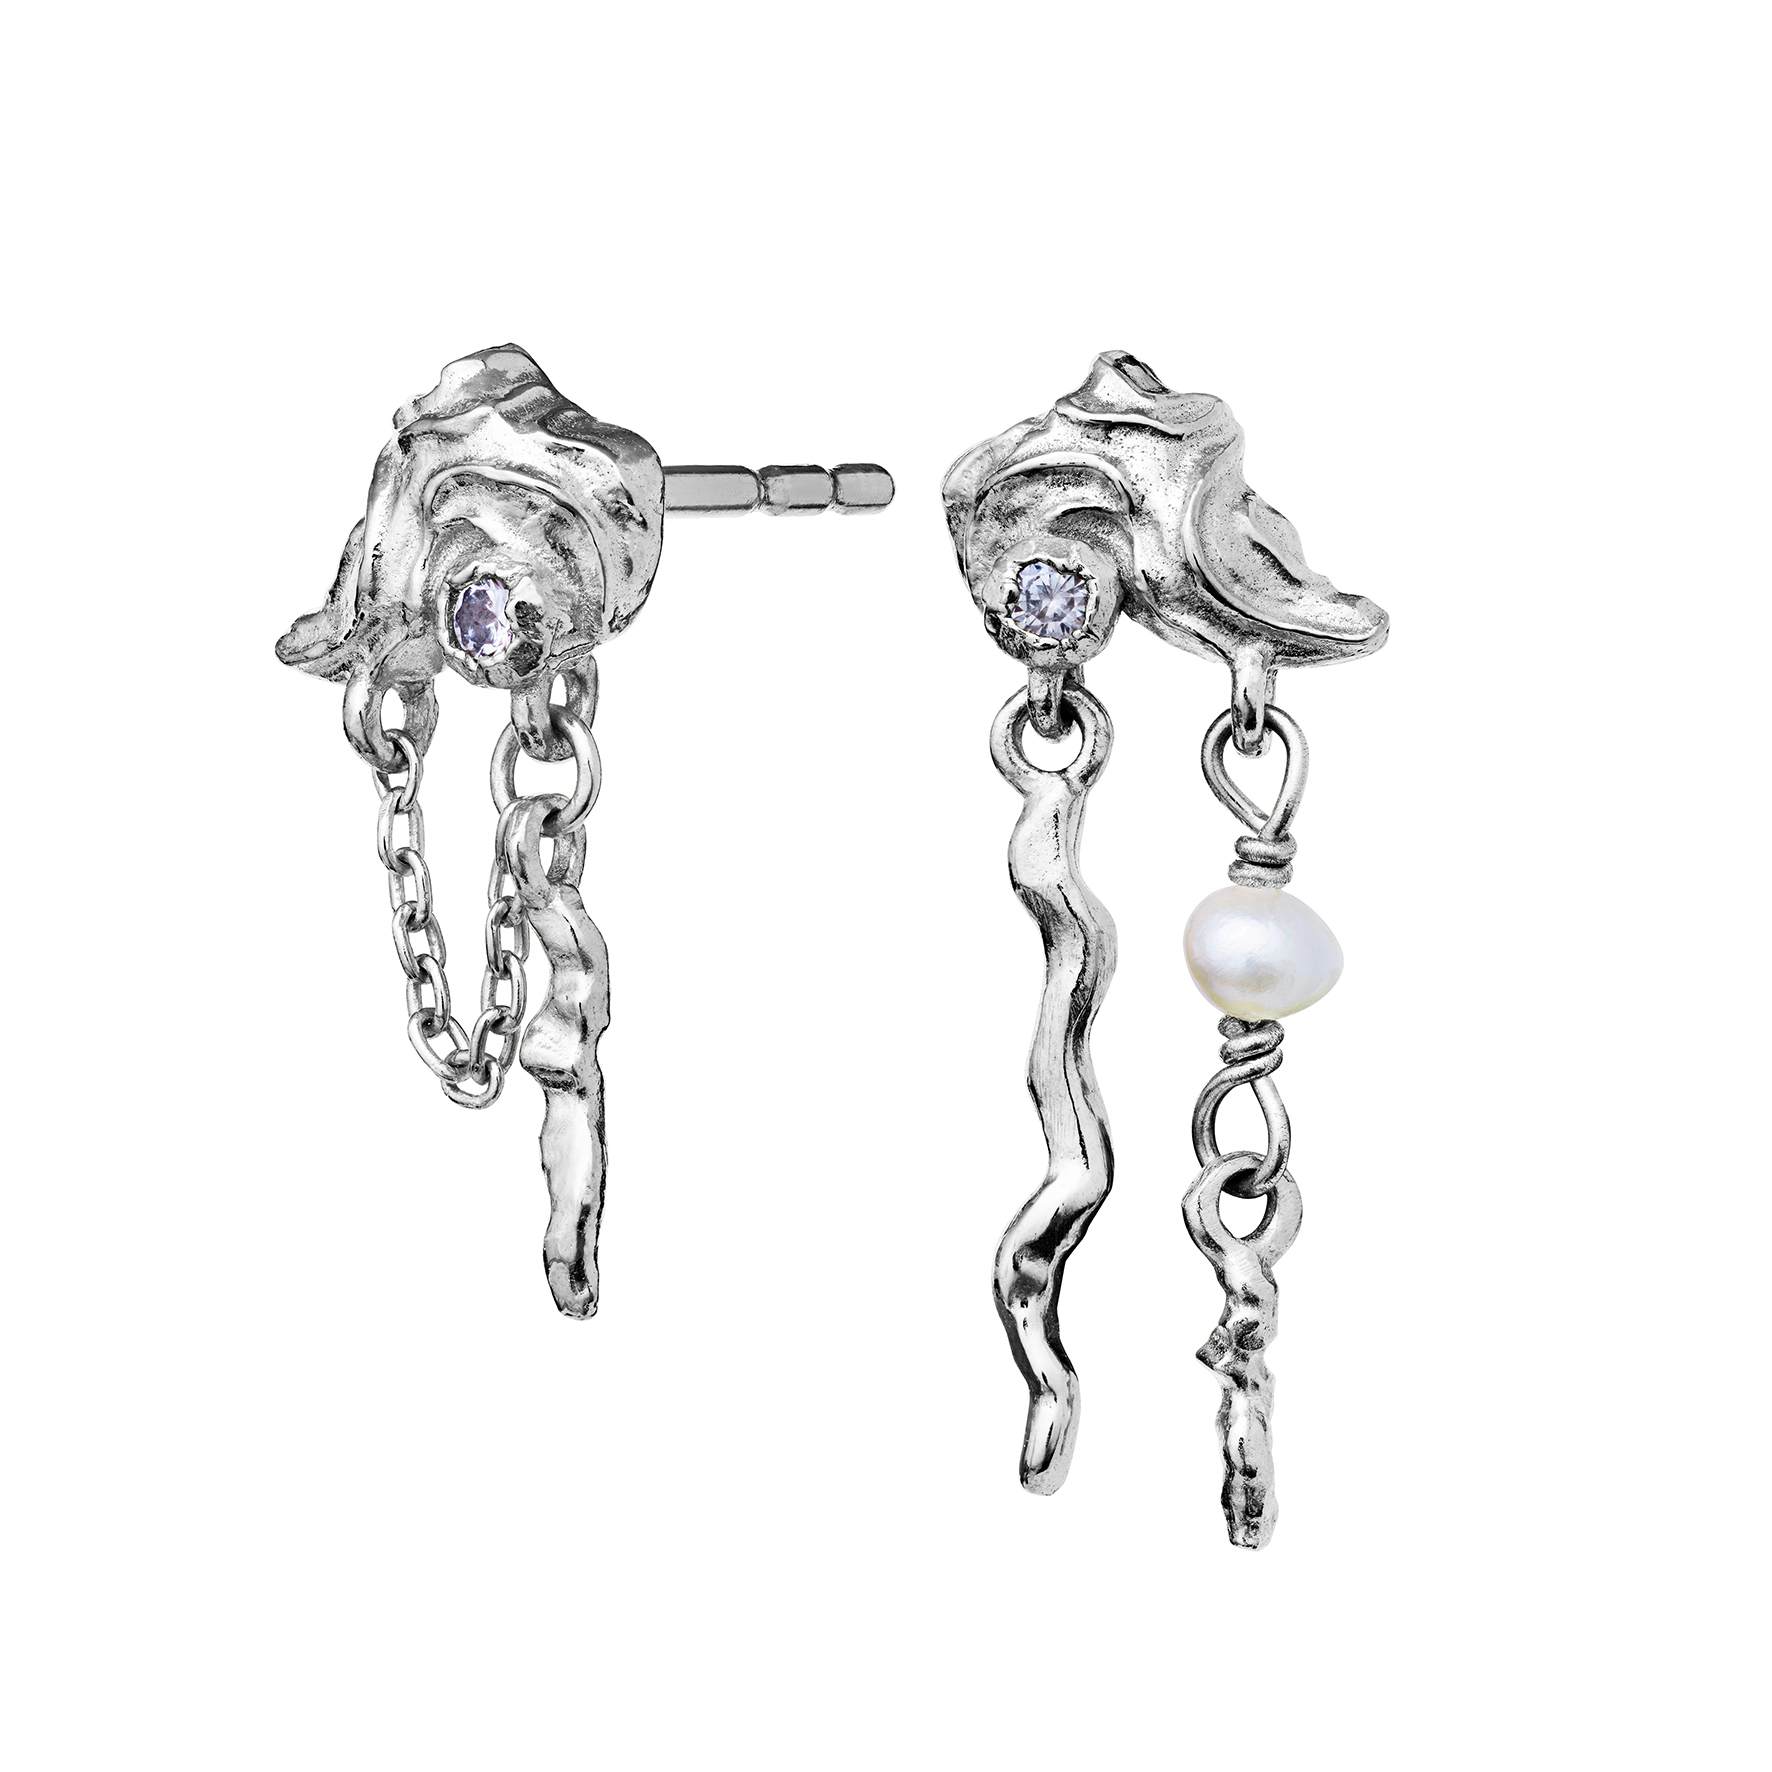 Baia Earrings from Maanesten in Silver Sterling 925